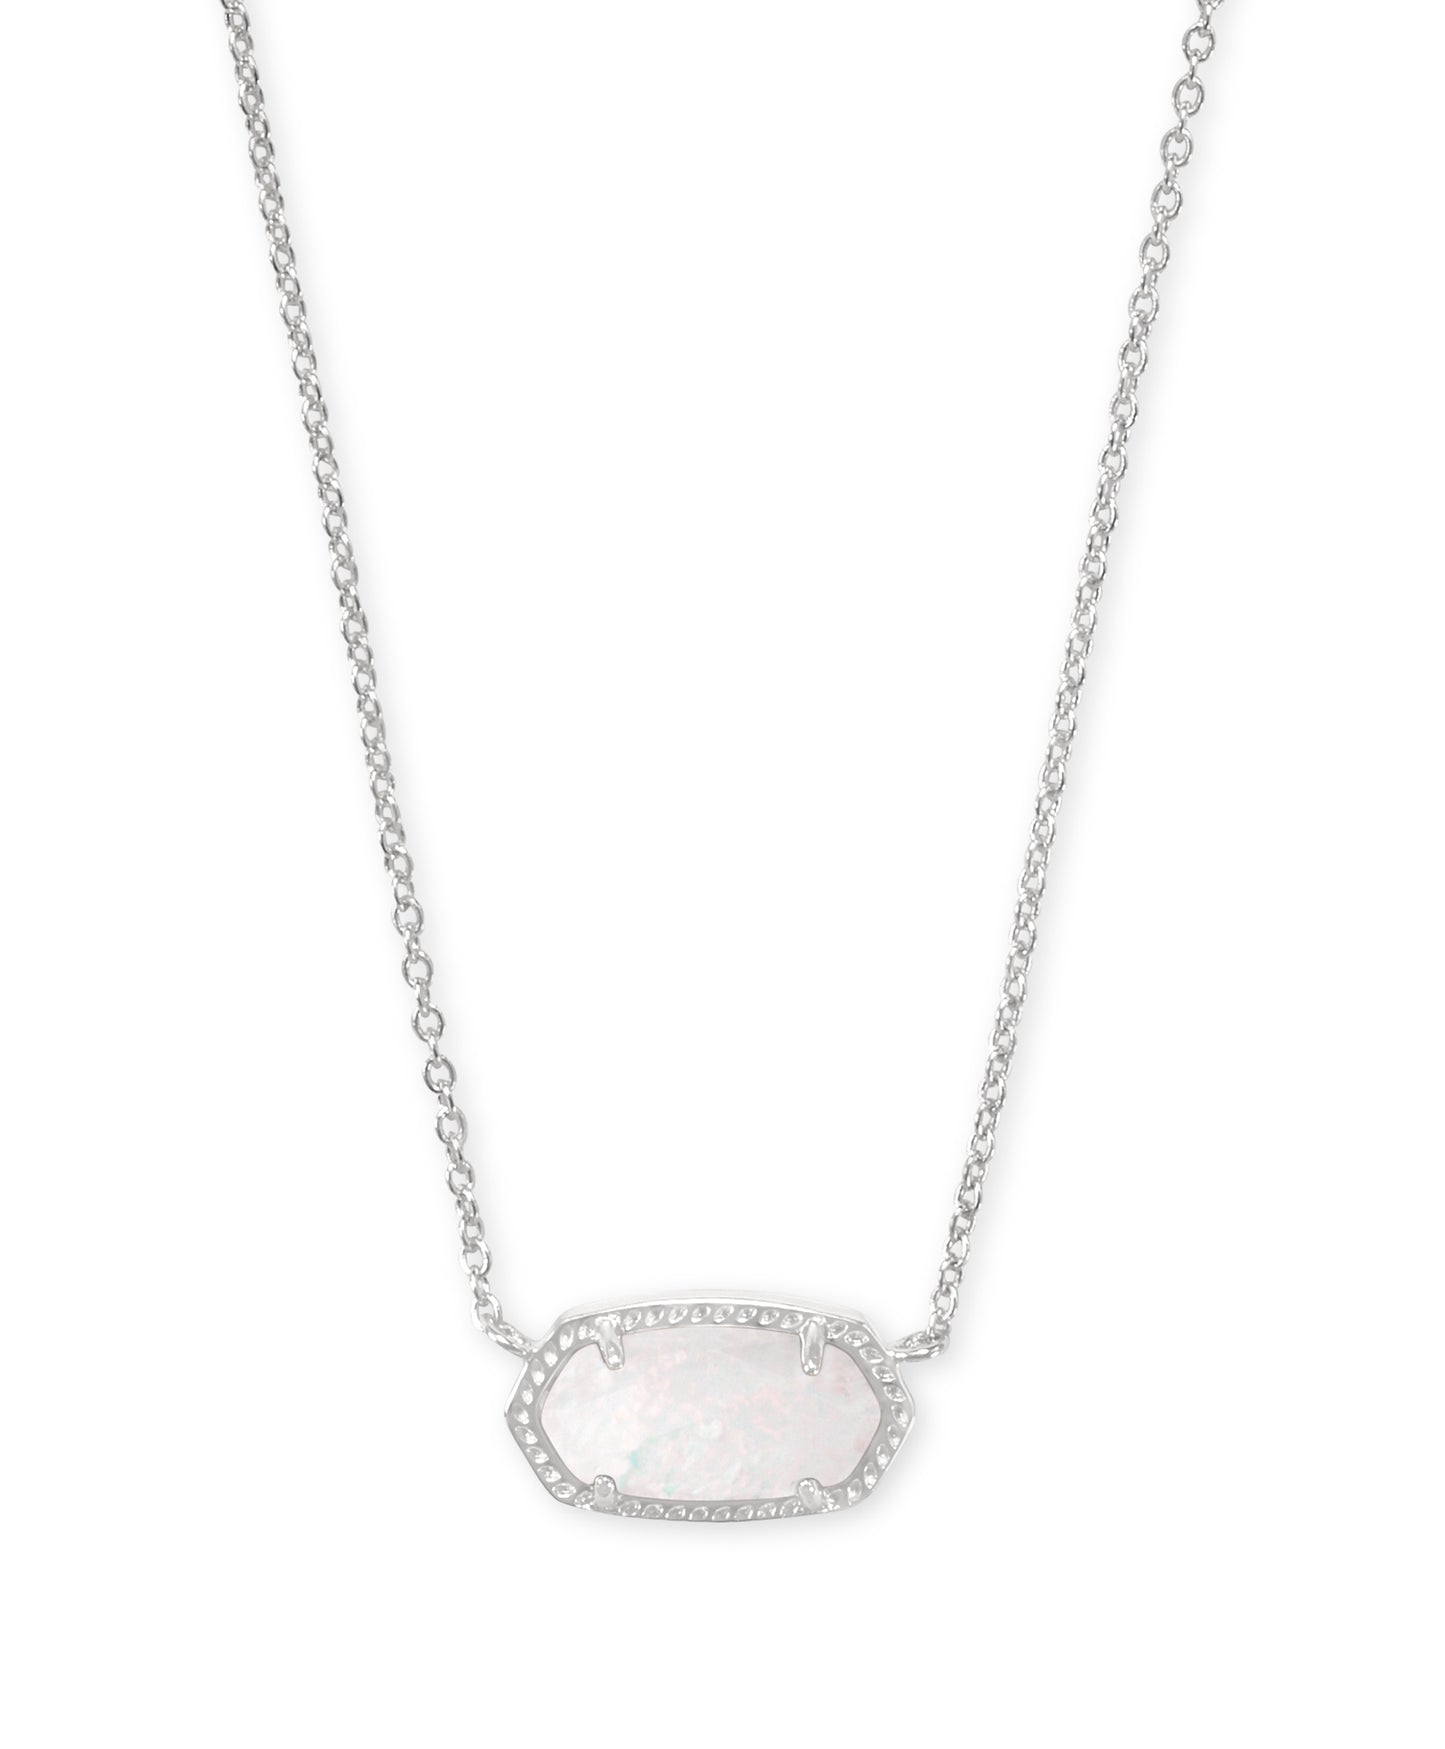 Elisa Necklace | Silver & White Kyocera Opal